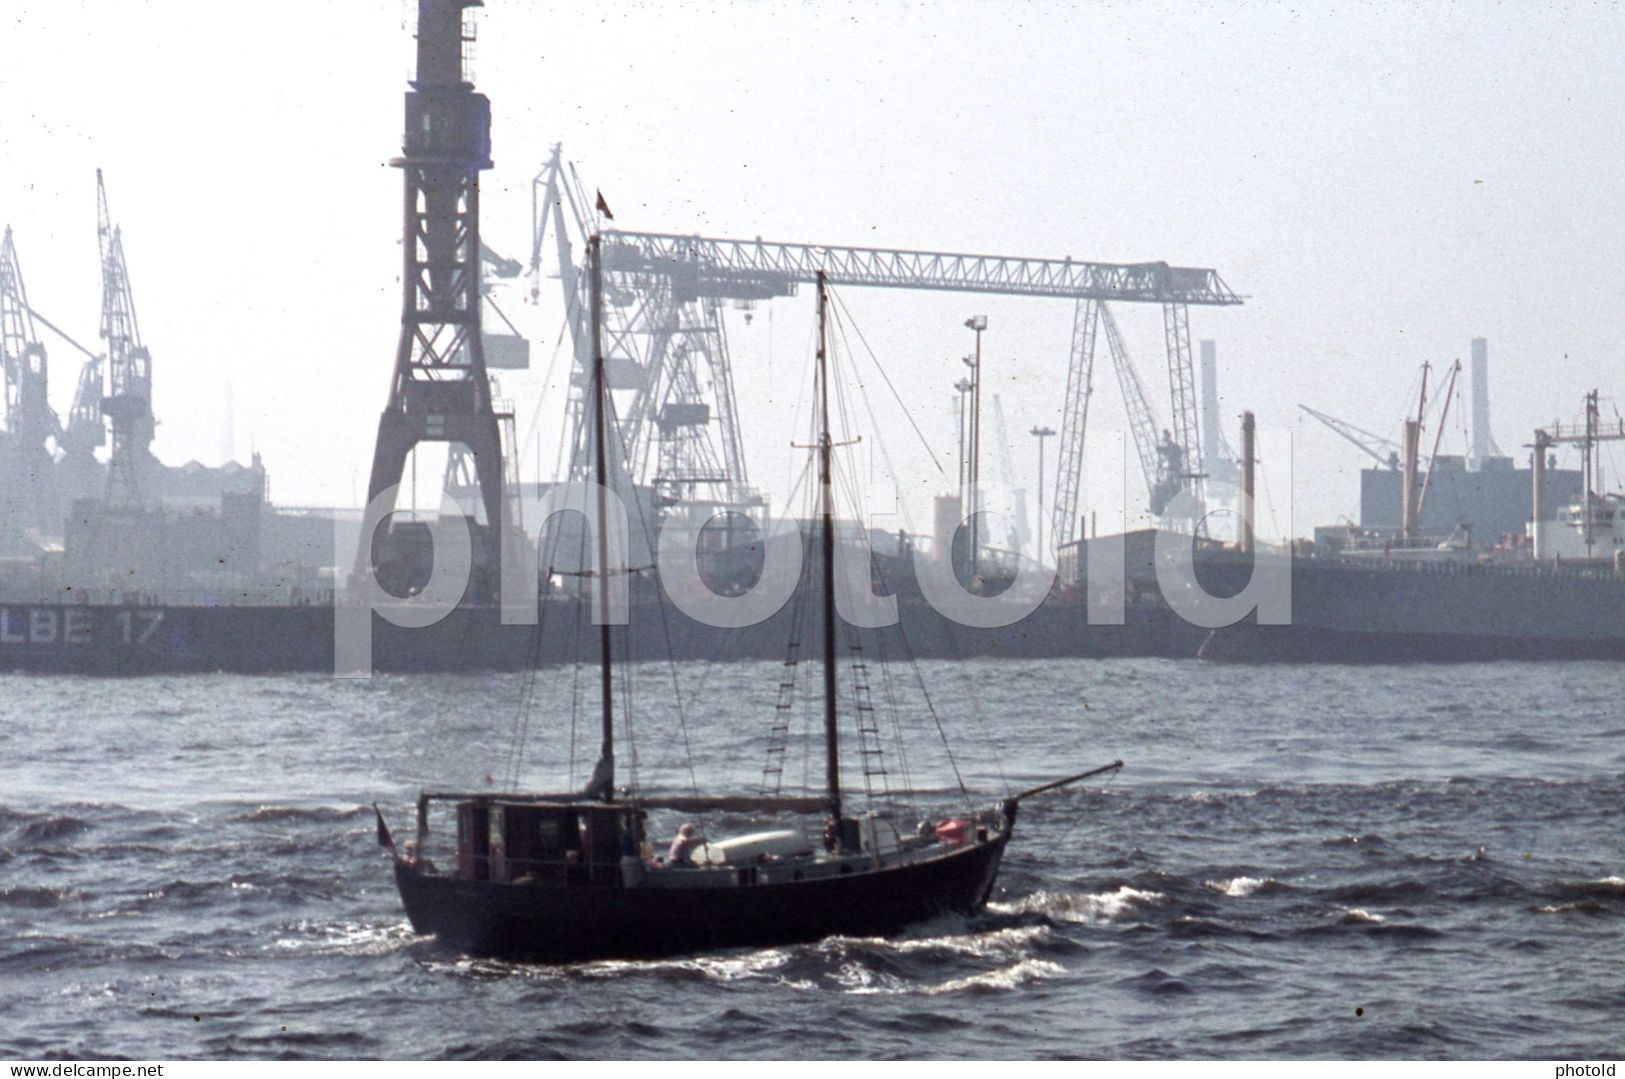 4 SLIDES SET 1970s SHIP VESSEL PORT HAMBURG GERMANY 35mm ORIGINAL AMATEUR DIAPOSITIVE SLIDE Not PHOTO No FOTO NB4108 - Dias